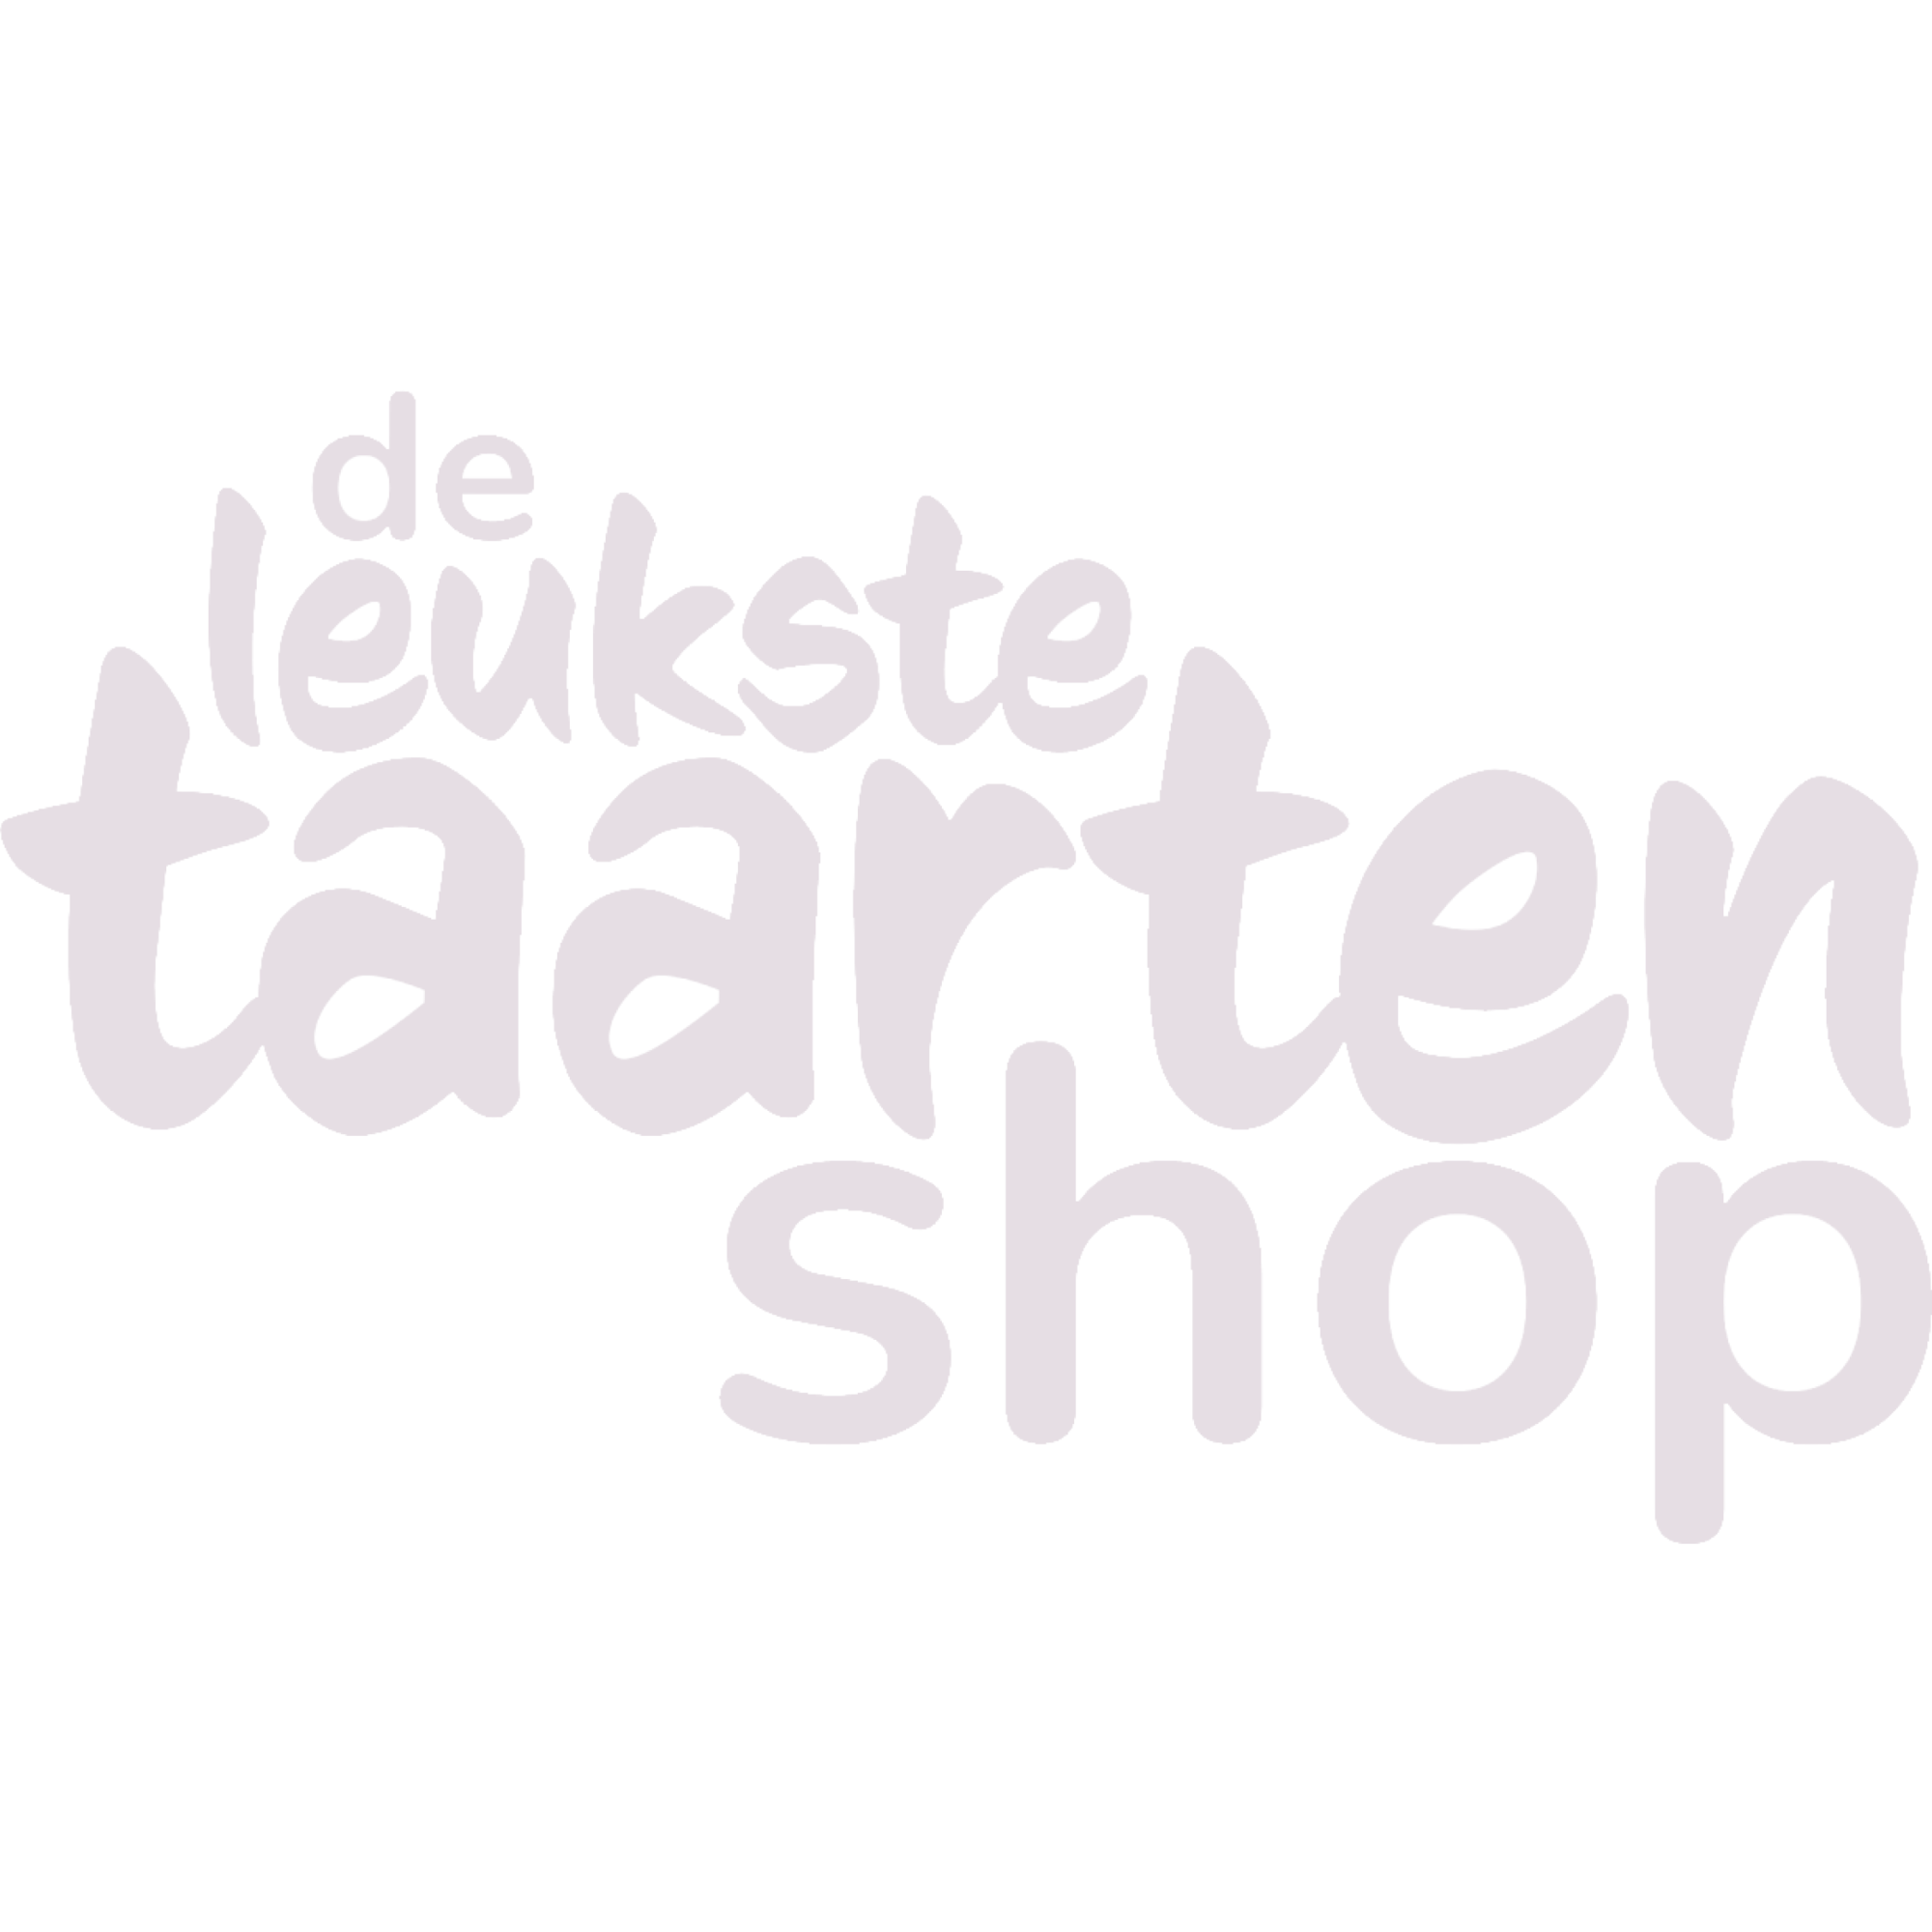 Bakvorm & Letters Countless - deleukstetaartenshop.nl